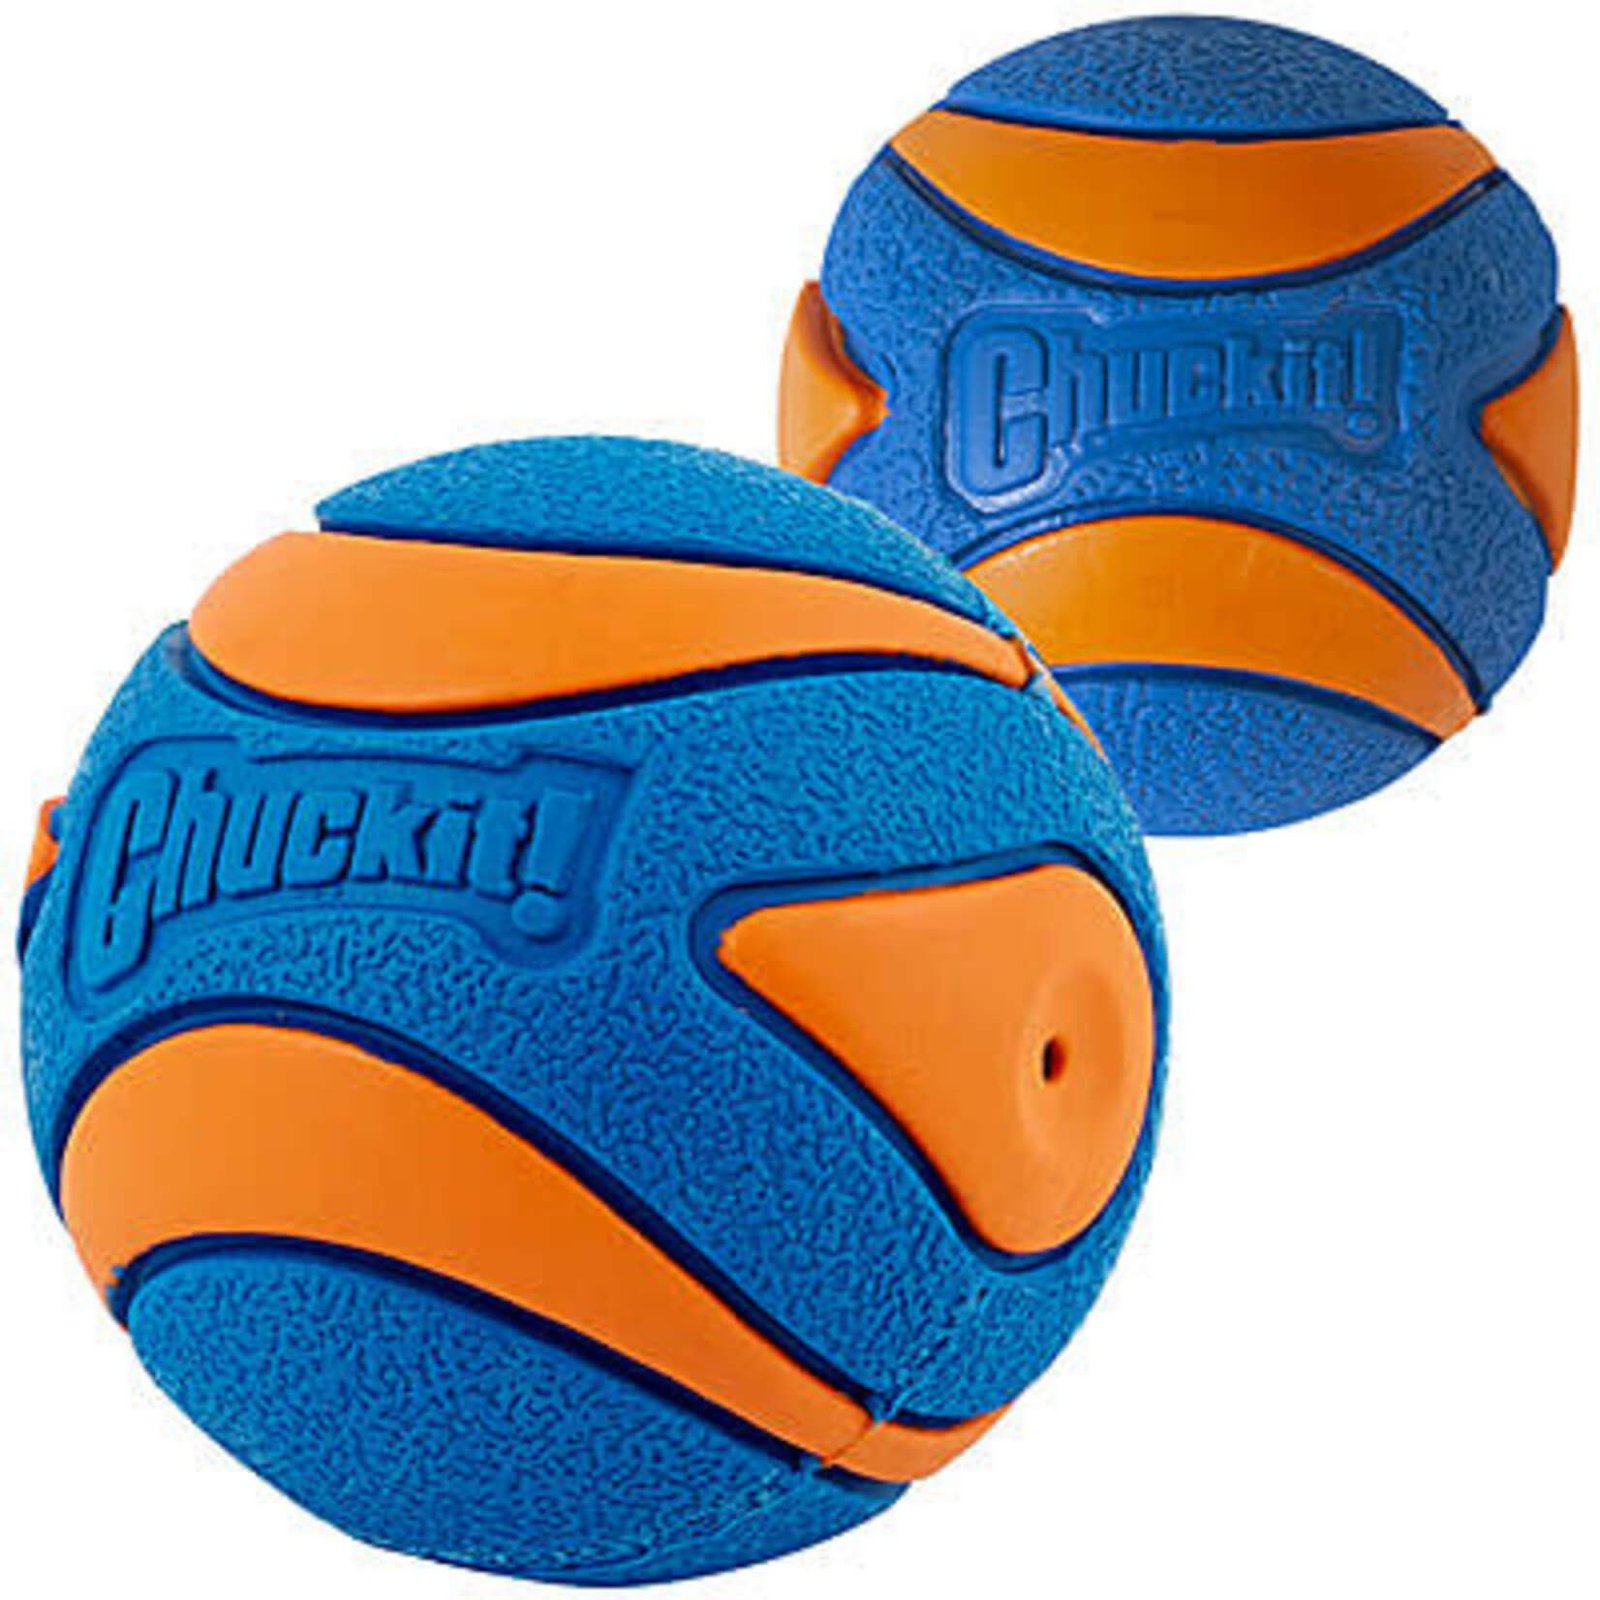 best squeaky ball chuckit ultra squeaker ball